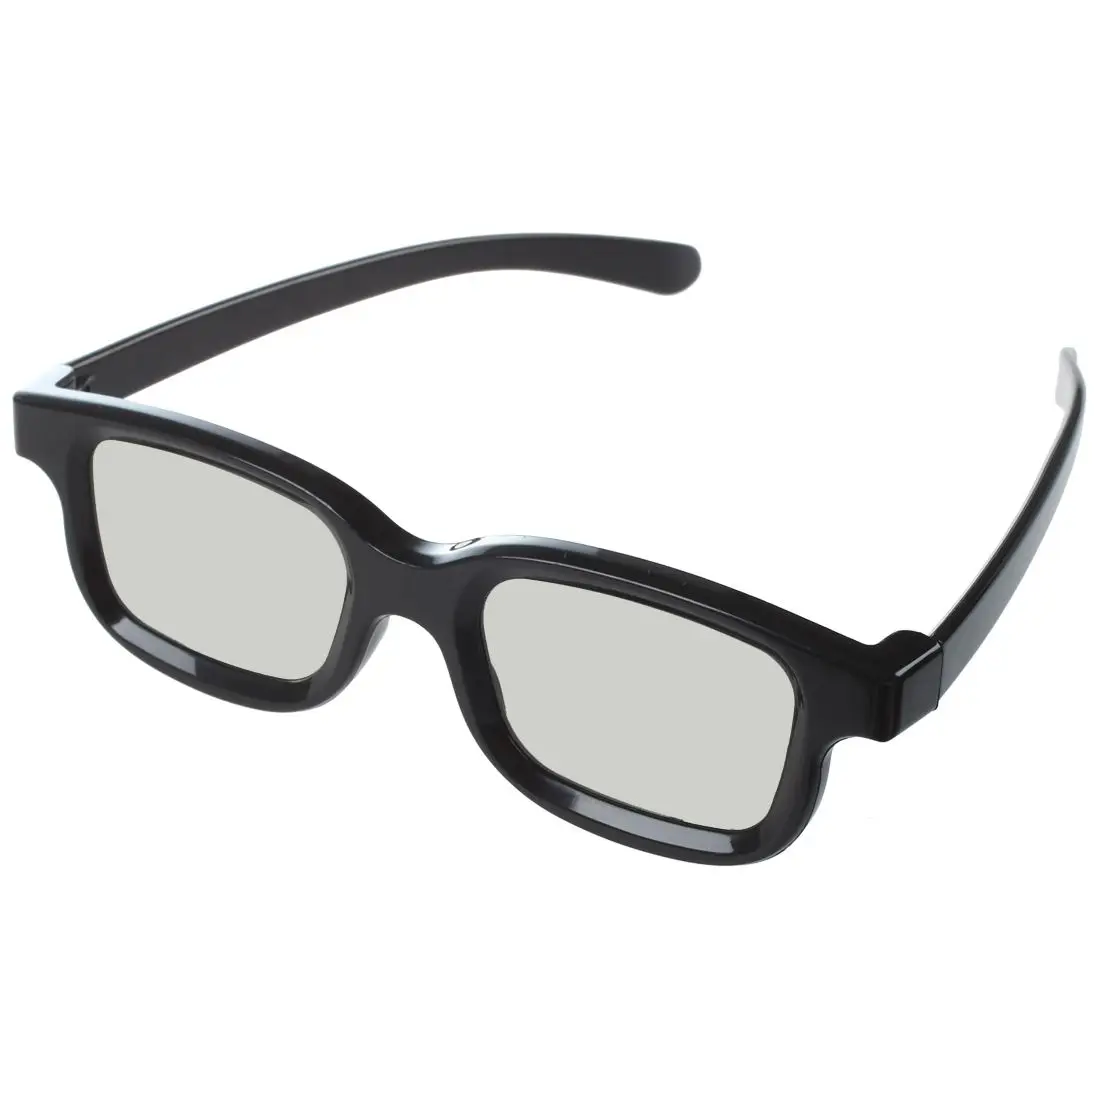 Grundig et RealD cinémas NOUVEAU de la marque PRECORN Easy 3D Philips Toshiba Lunettes 3D Clip-On universelles lunettes 3D passives pour les porteurs de lunettes 3D compatibles avec Cinema LG Panasonic 